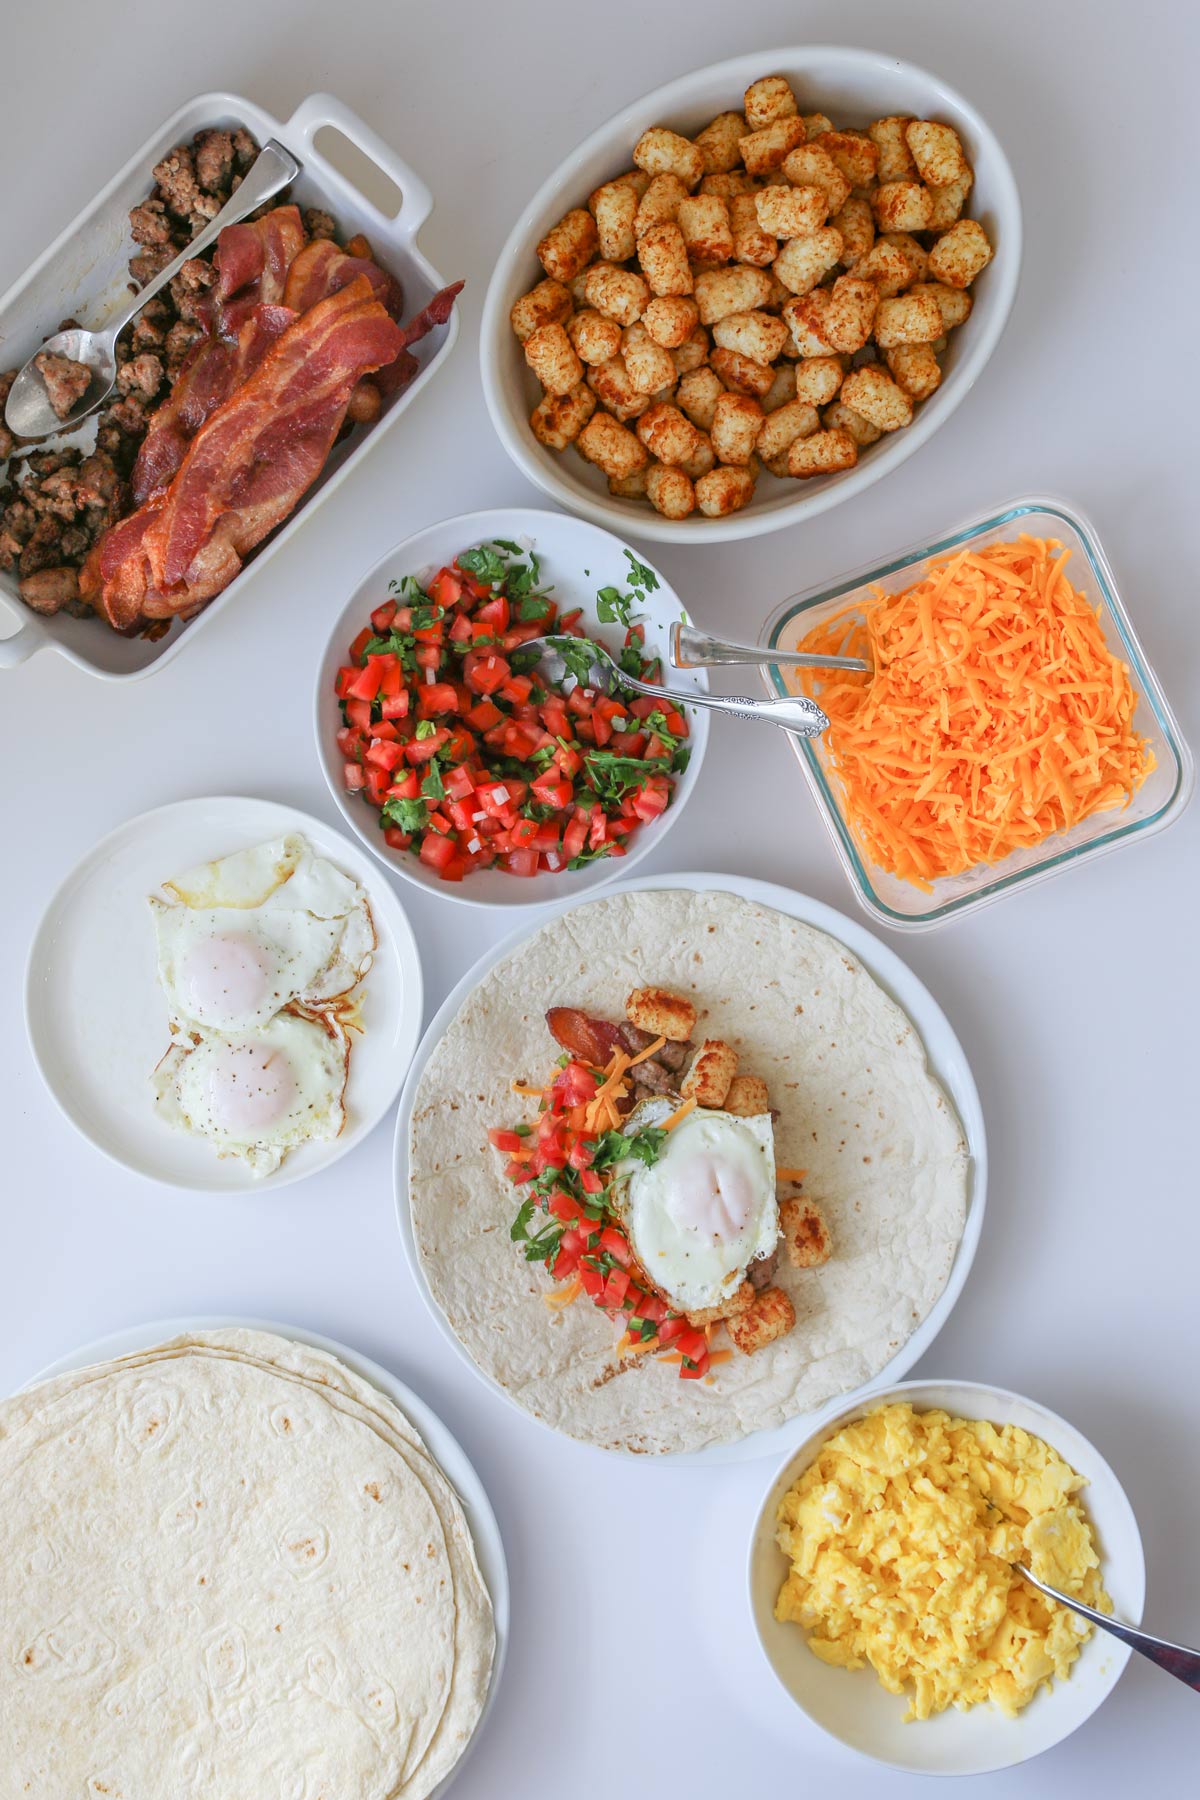 różnorodne nadzienia burrito śniadaniowe ułożone na białej powierzchni.